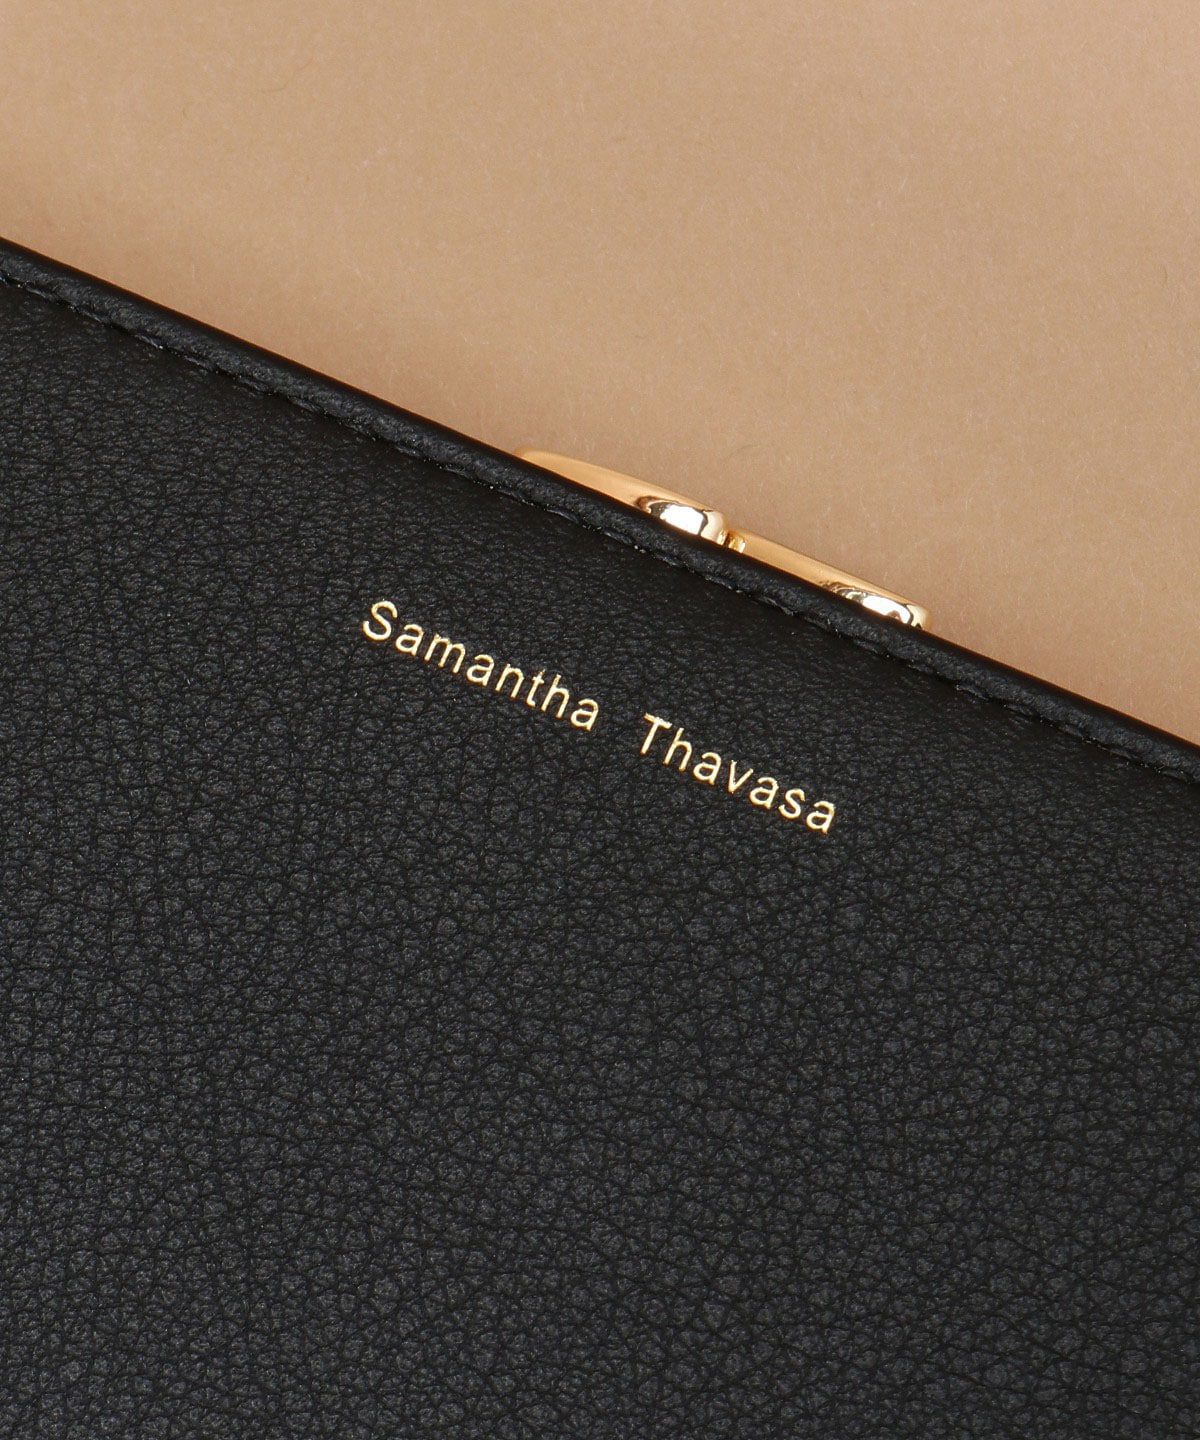 イタリアンレザー ブック型口金財布(FREE ブラック): Samantha Thavasa 